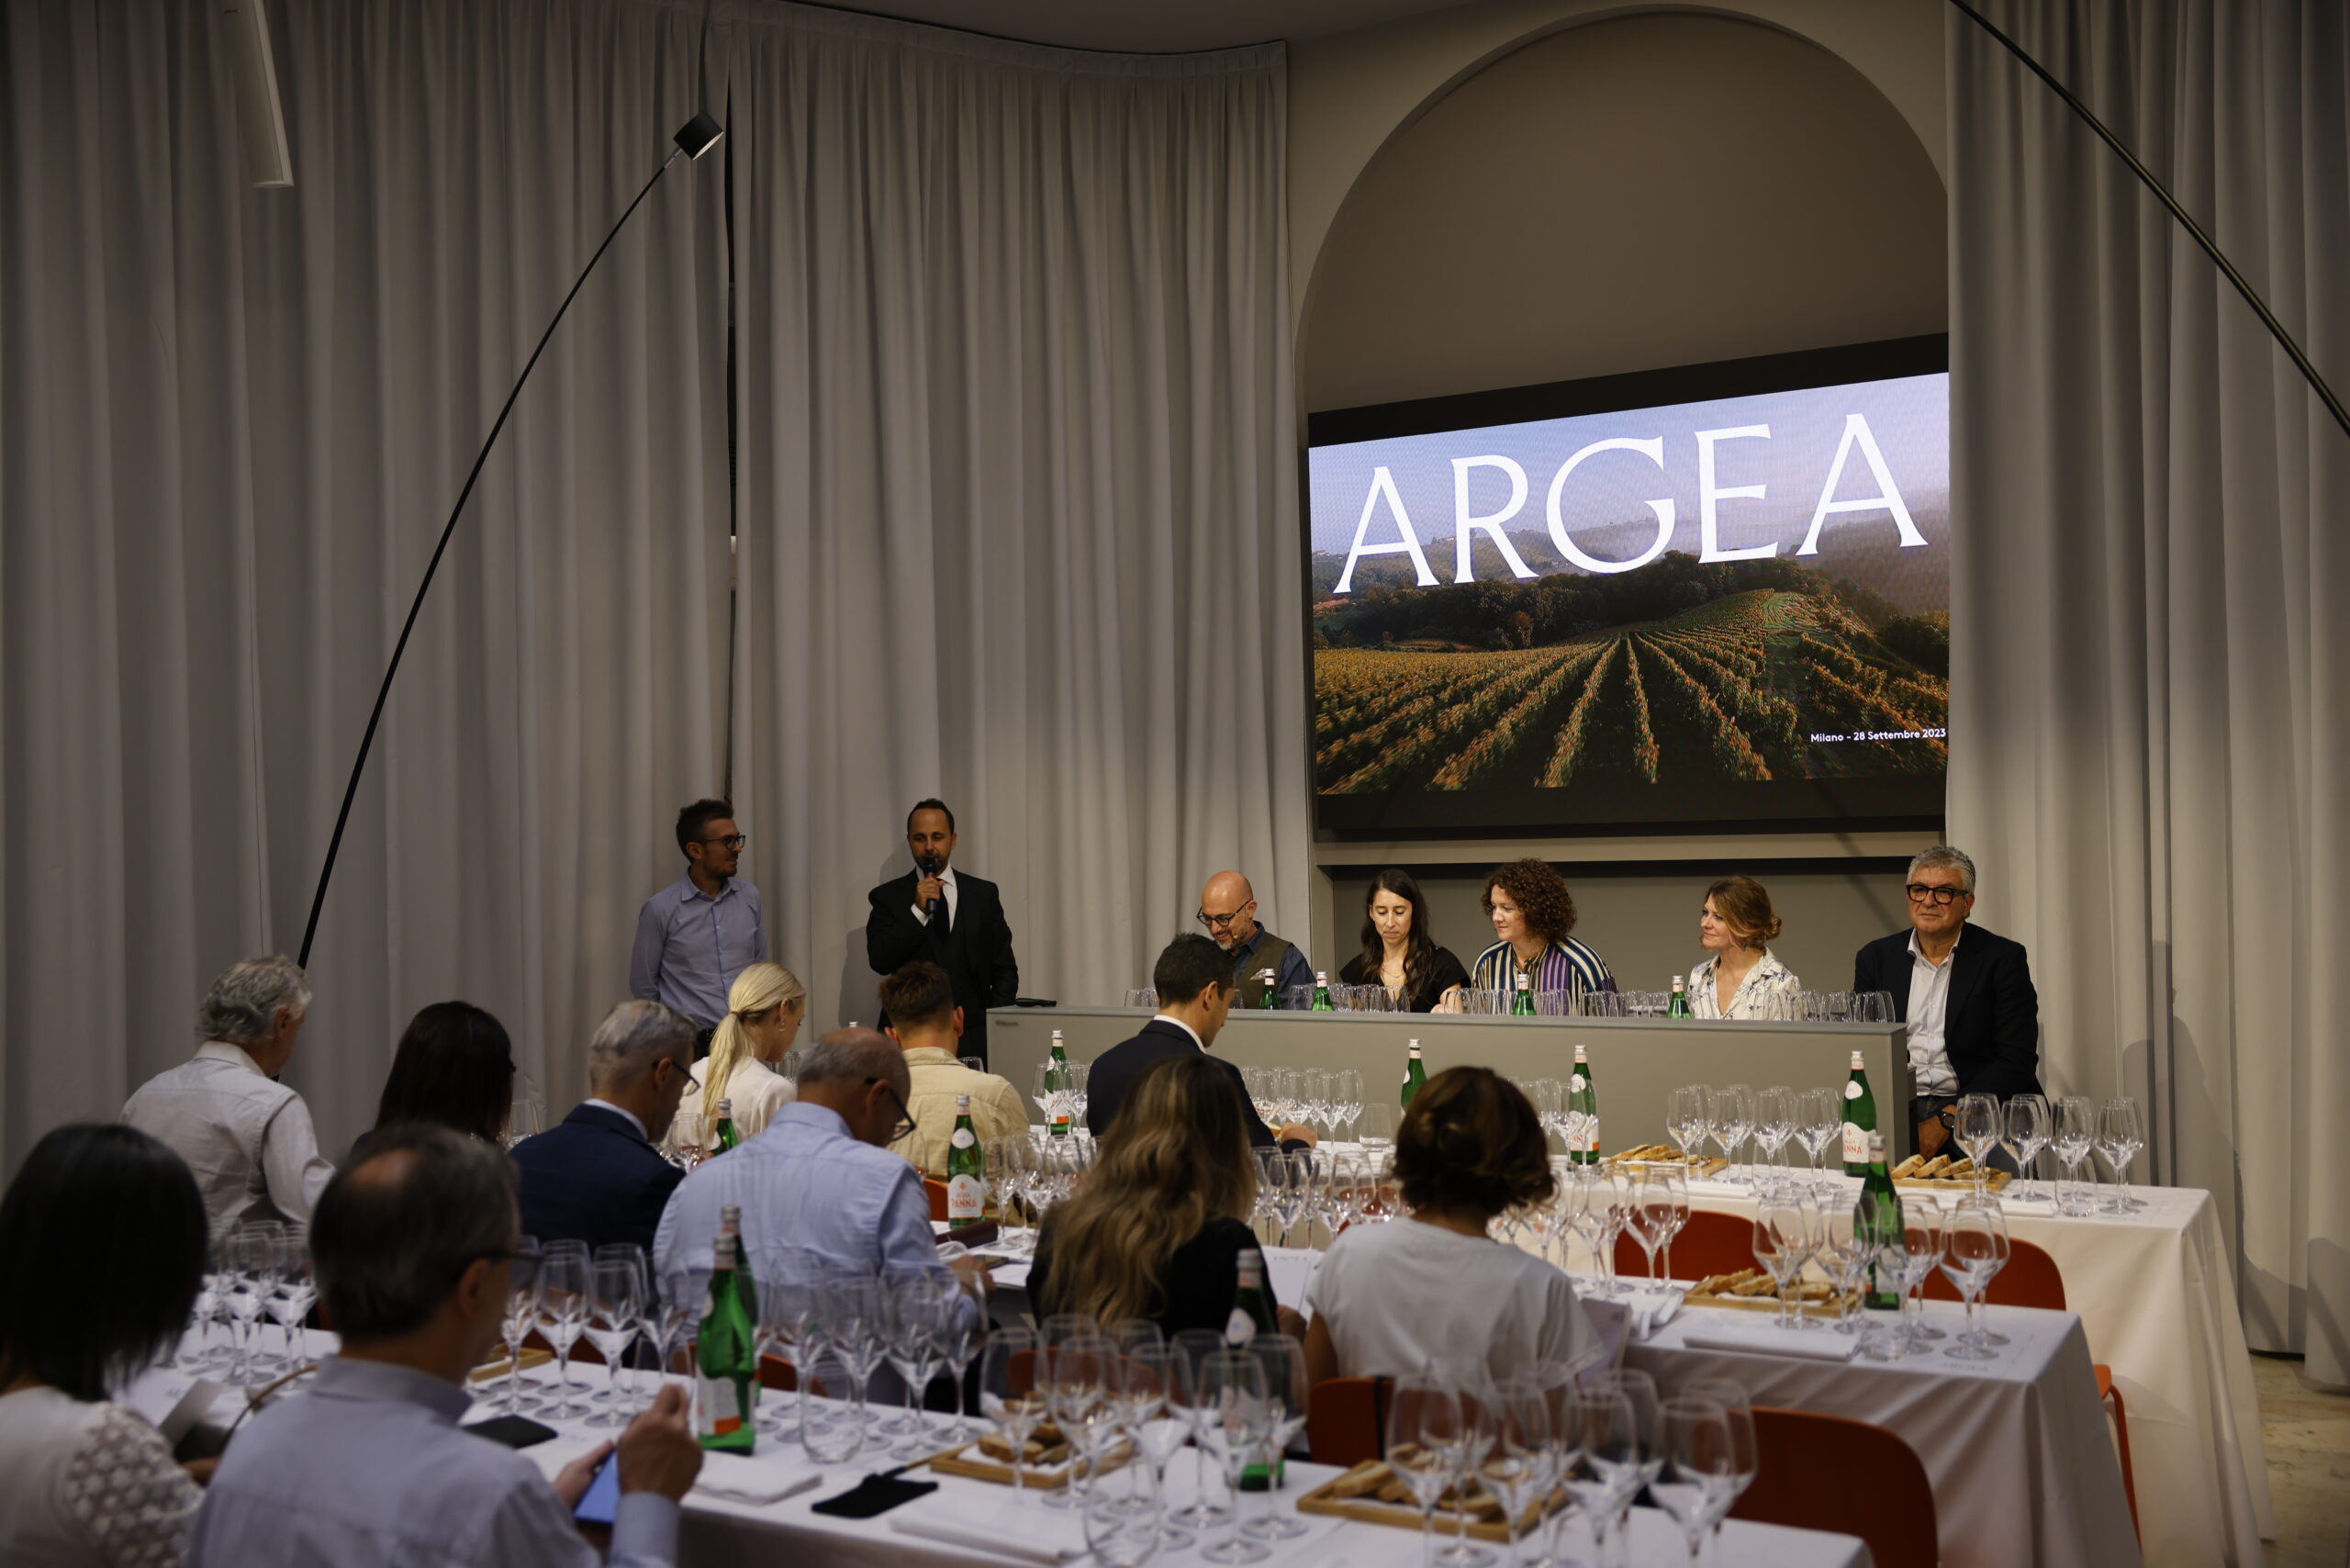 Gli Artists di ARGEA: le eccellenze di territorio del primo gruppo vinicolo privato italiano, foto da comunicato stampa